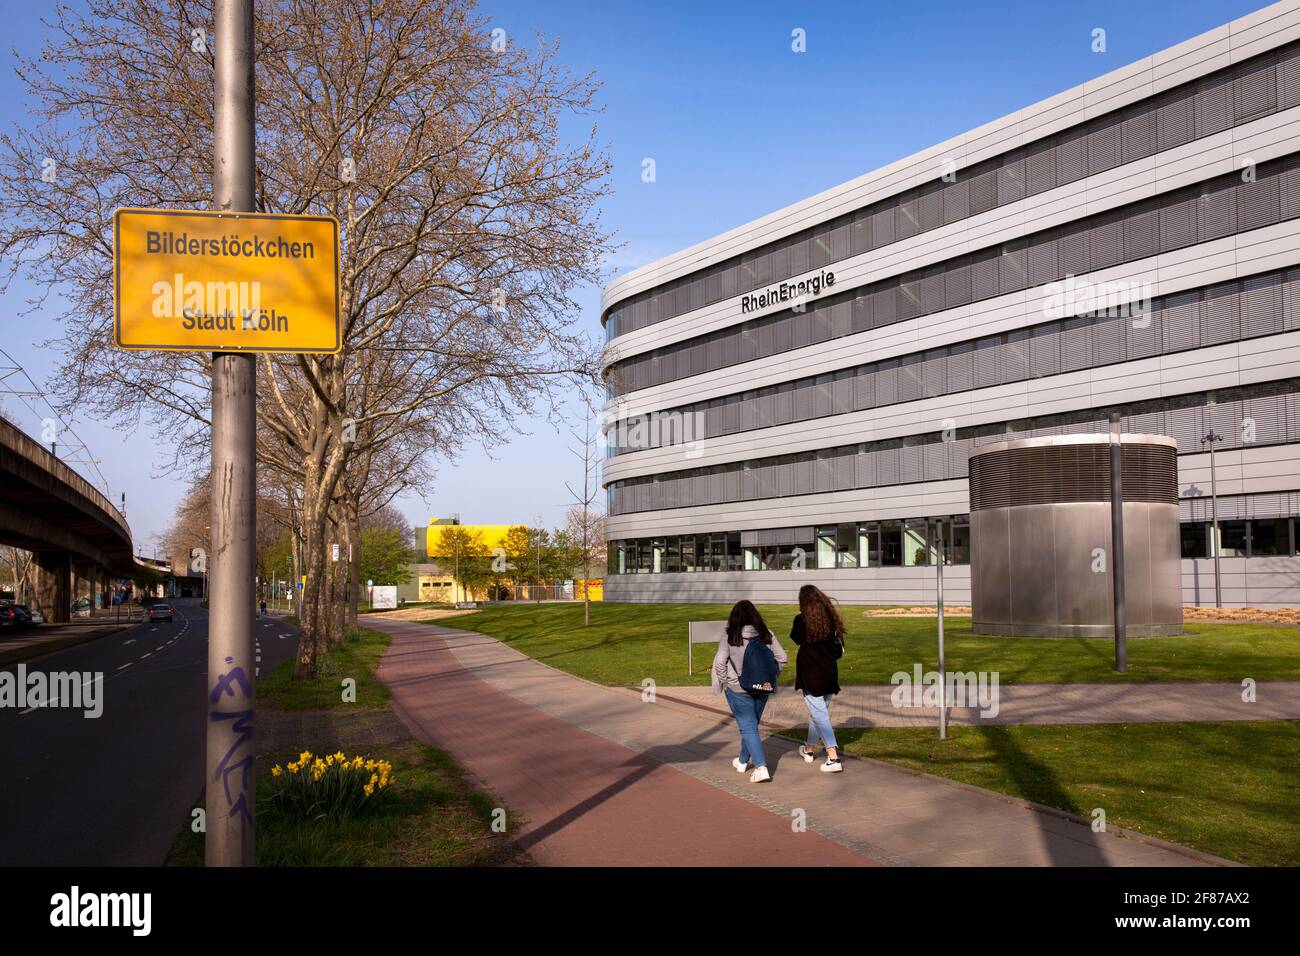 Hauptsitz des Elektrizitätsversorgers RheinEnergie in der Parkguertel, Köln, Deutschland. Zentrale des Energieversorgers RheinEnergie am Stockfoto